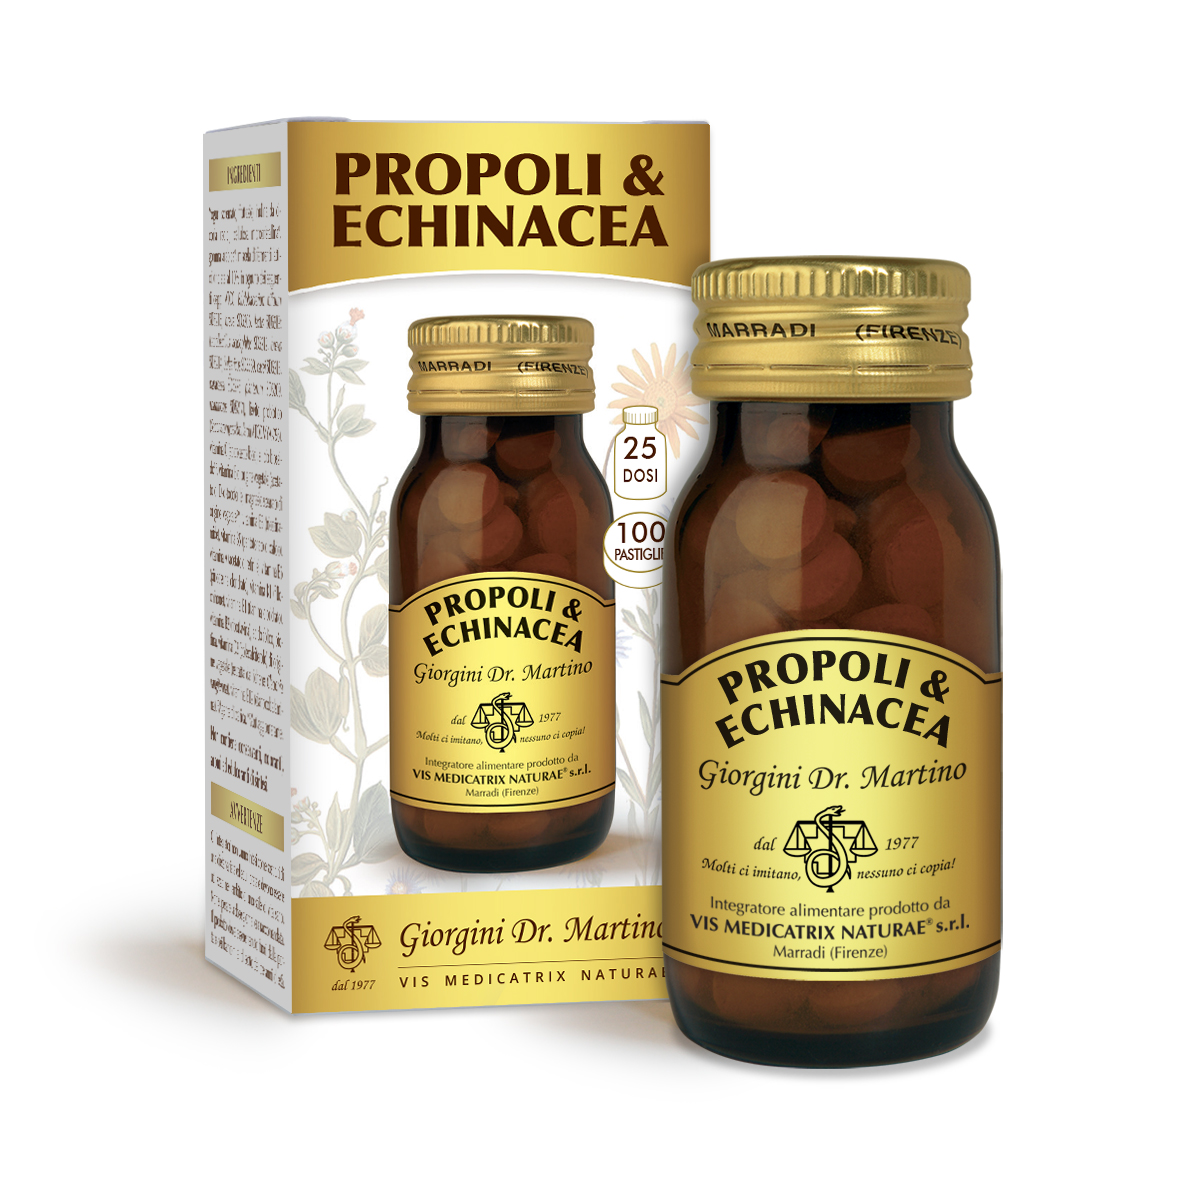 PROPOLI & ECHINACEA 50 g - 100pastiglie